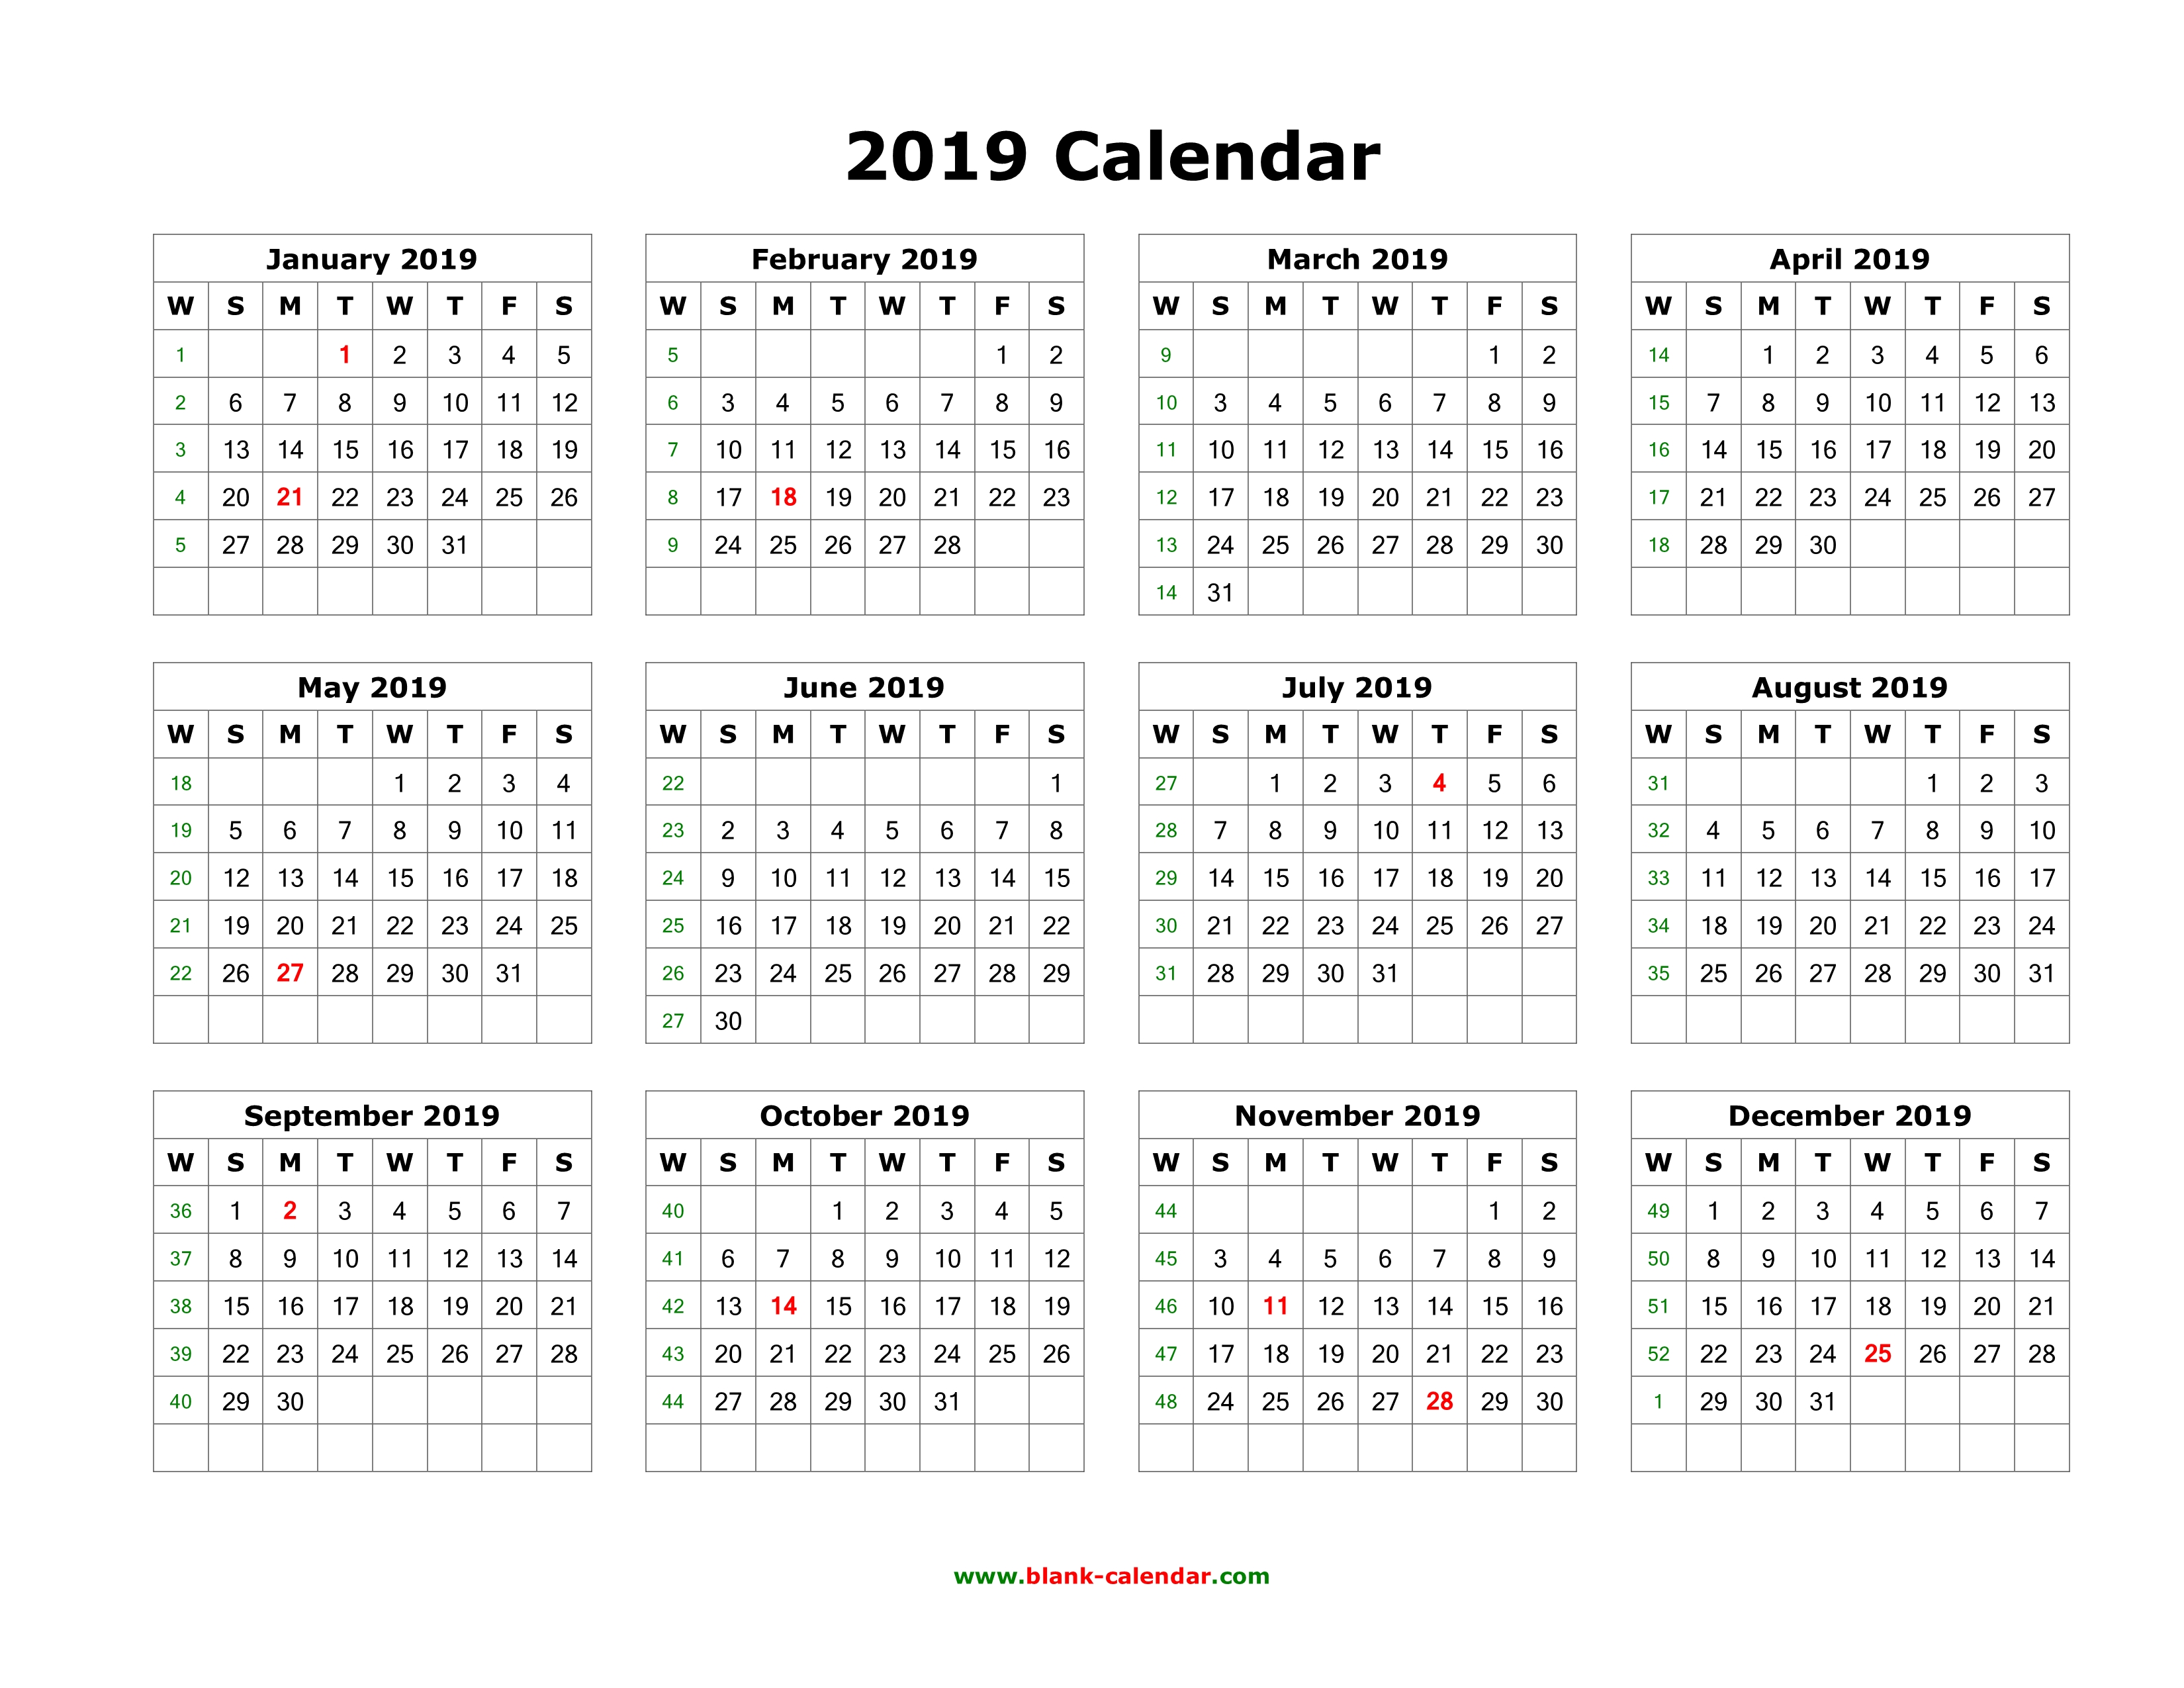 sanctuary atc april calendar 2019 with holidays